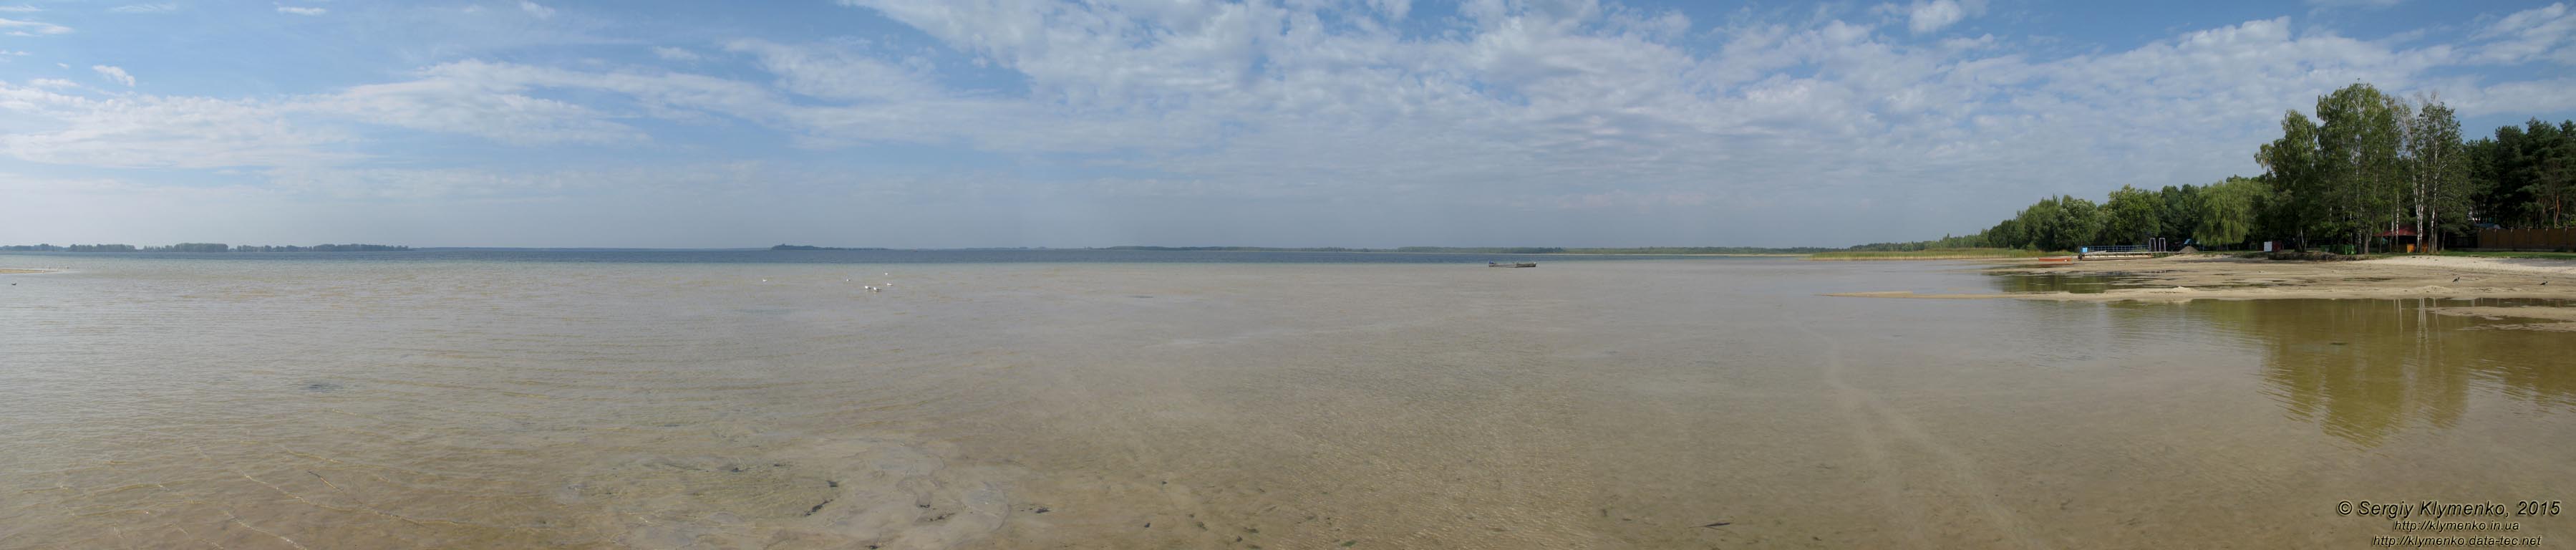 Волынь, Шацкие озёра. Фото. Живописный вид озера Свитязь. Панорама ~210° (51°30'41.20"N, 23°53'25.70"E).